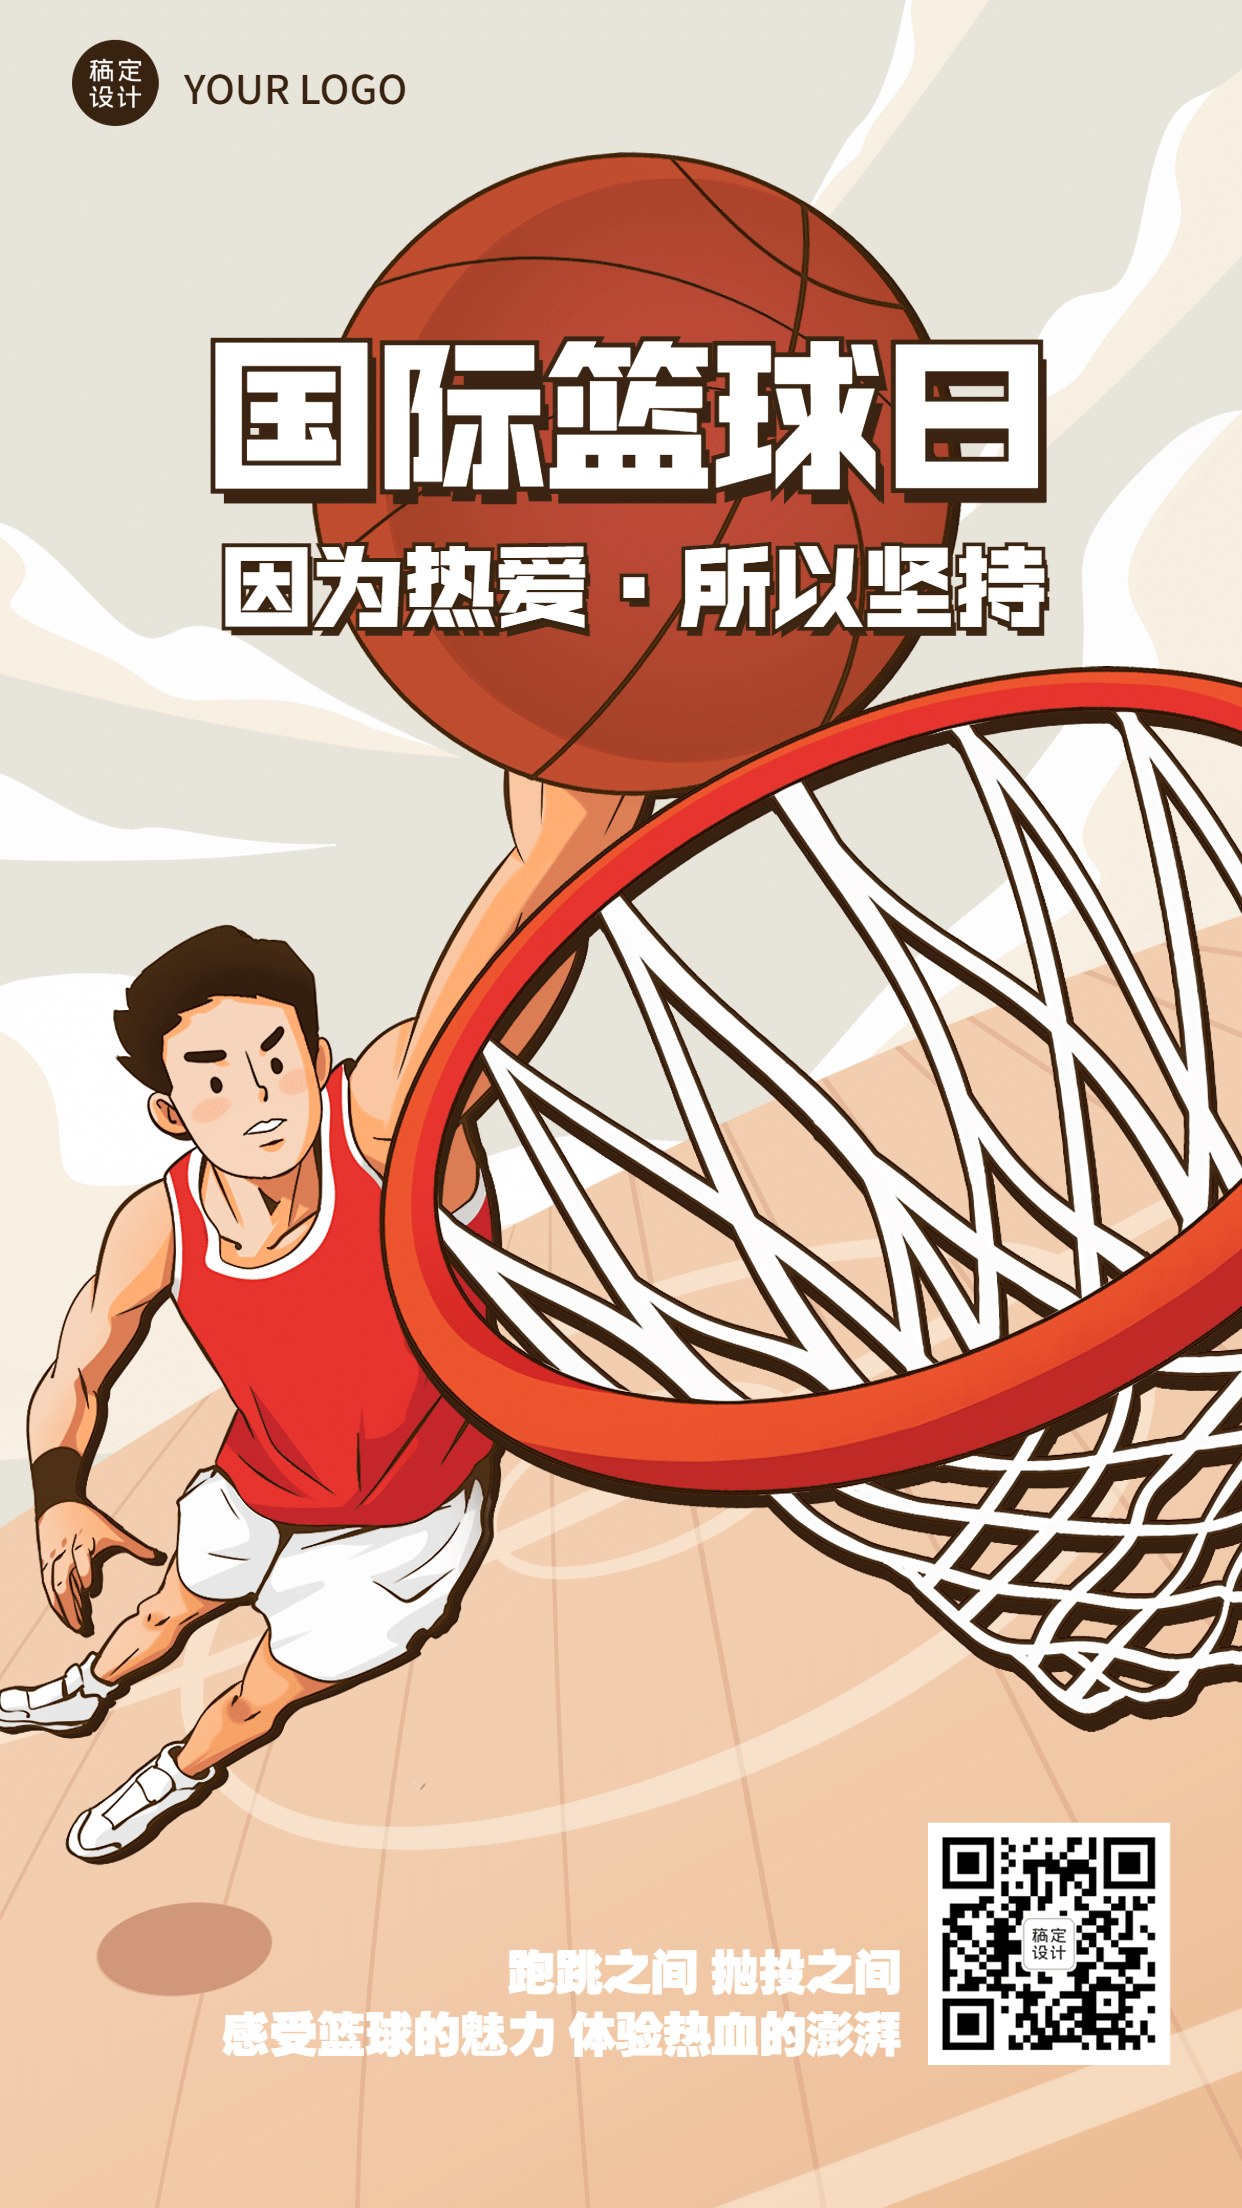 国际篮球日体育赛事手机海报预览效果